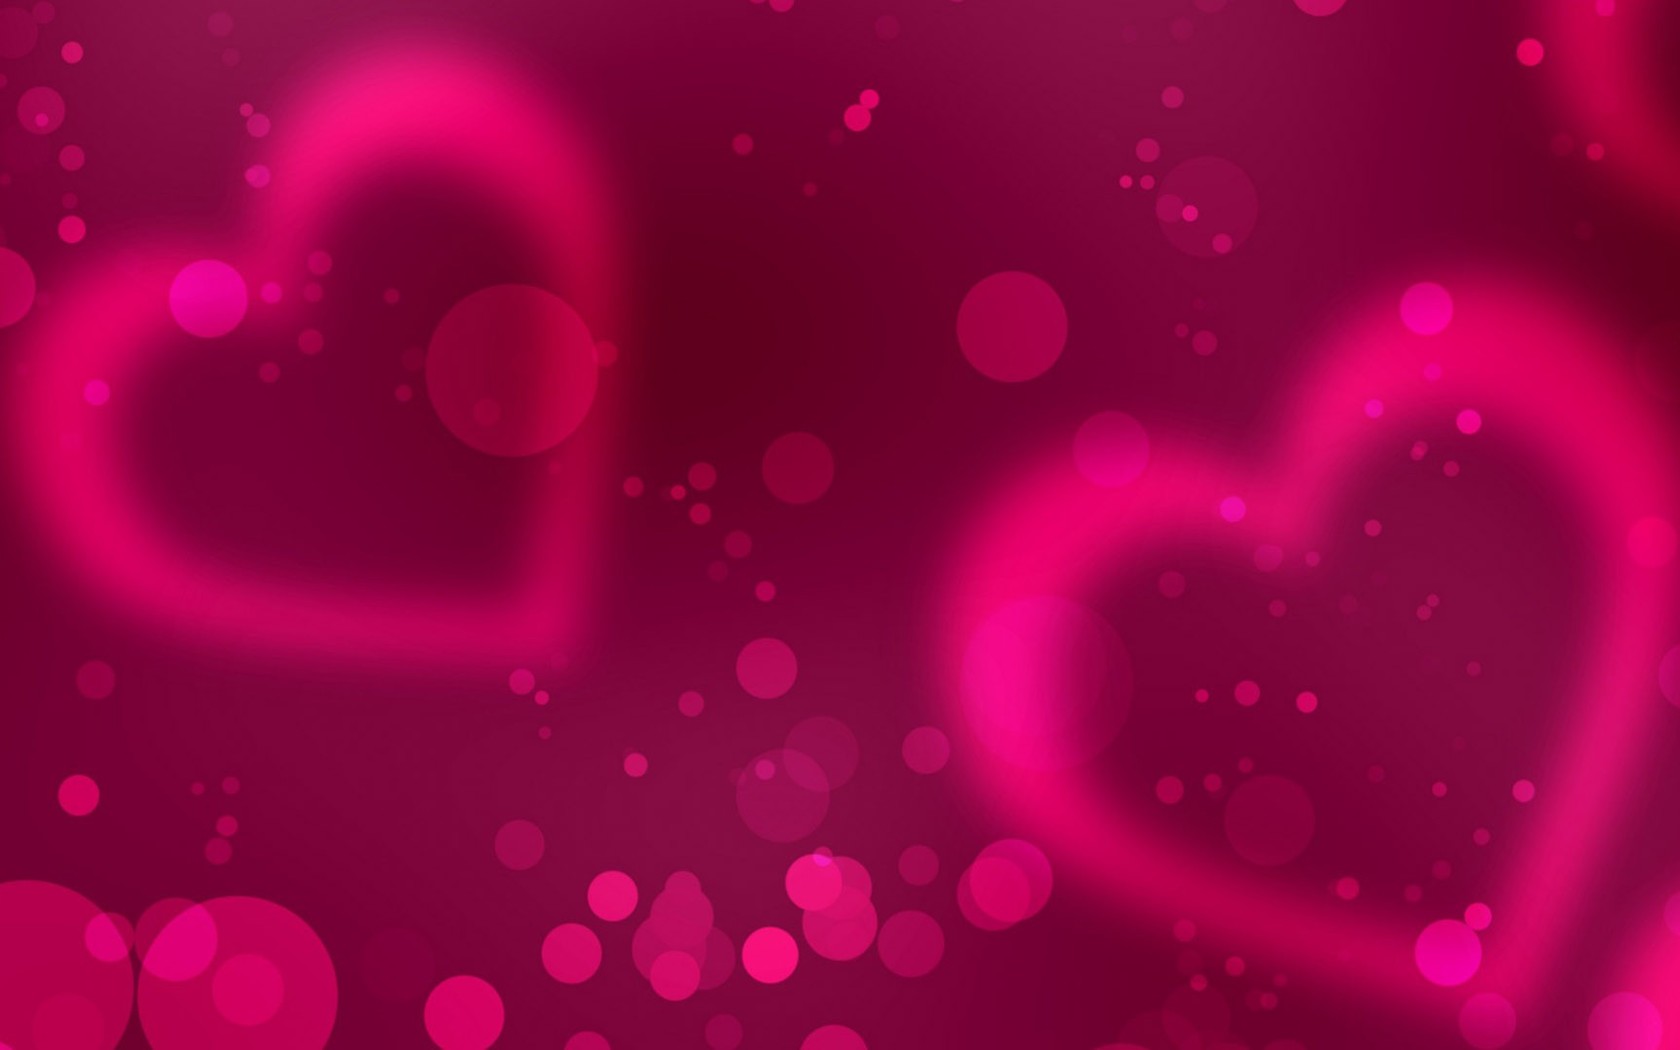 Nền trái tim hồng là một lựa chọn hoàn hảo cho những ai yêu thích màu hồng và những hình dáng trái tim ngọt ngào. Những lần click chuột vào hình nền trái tim hồng sẽ khiến bạn thích thú và vô vàn cảm xúc.